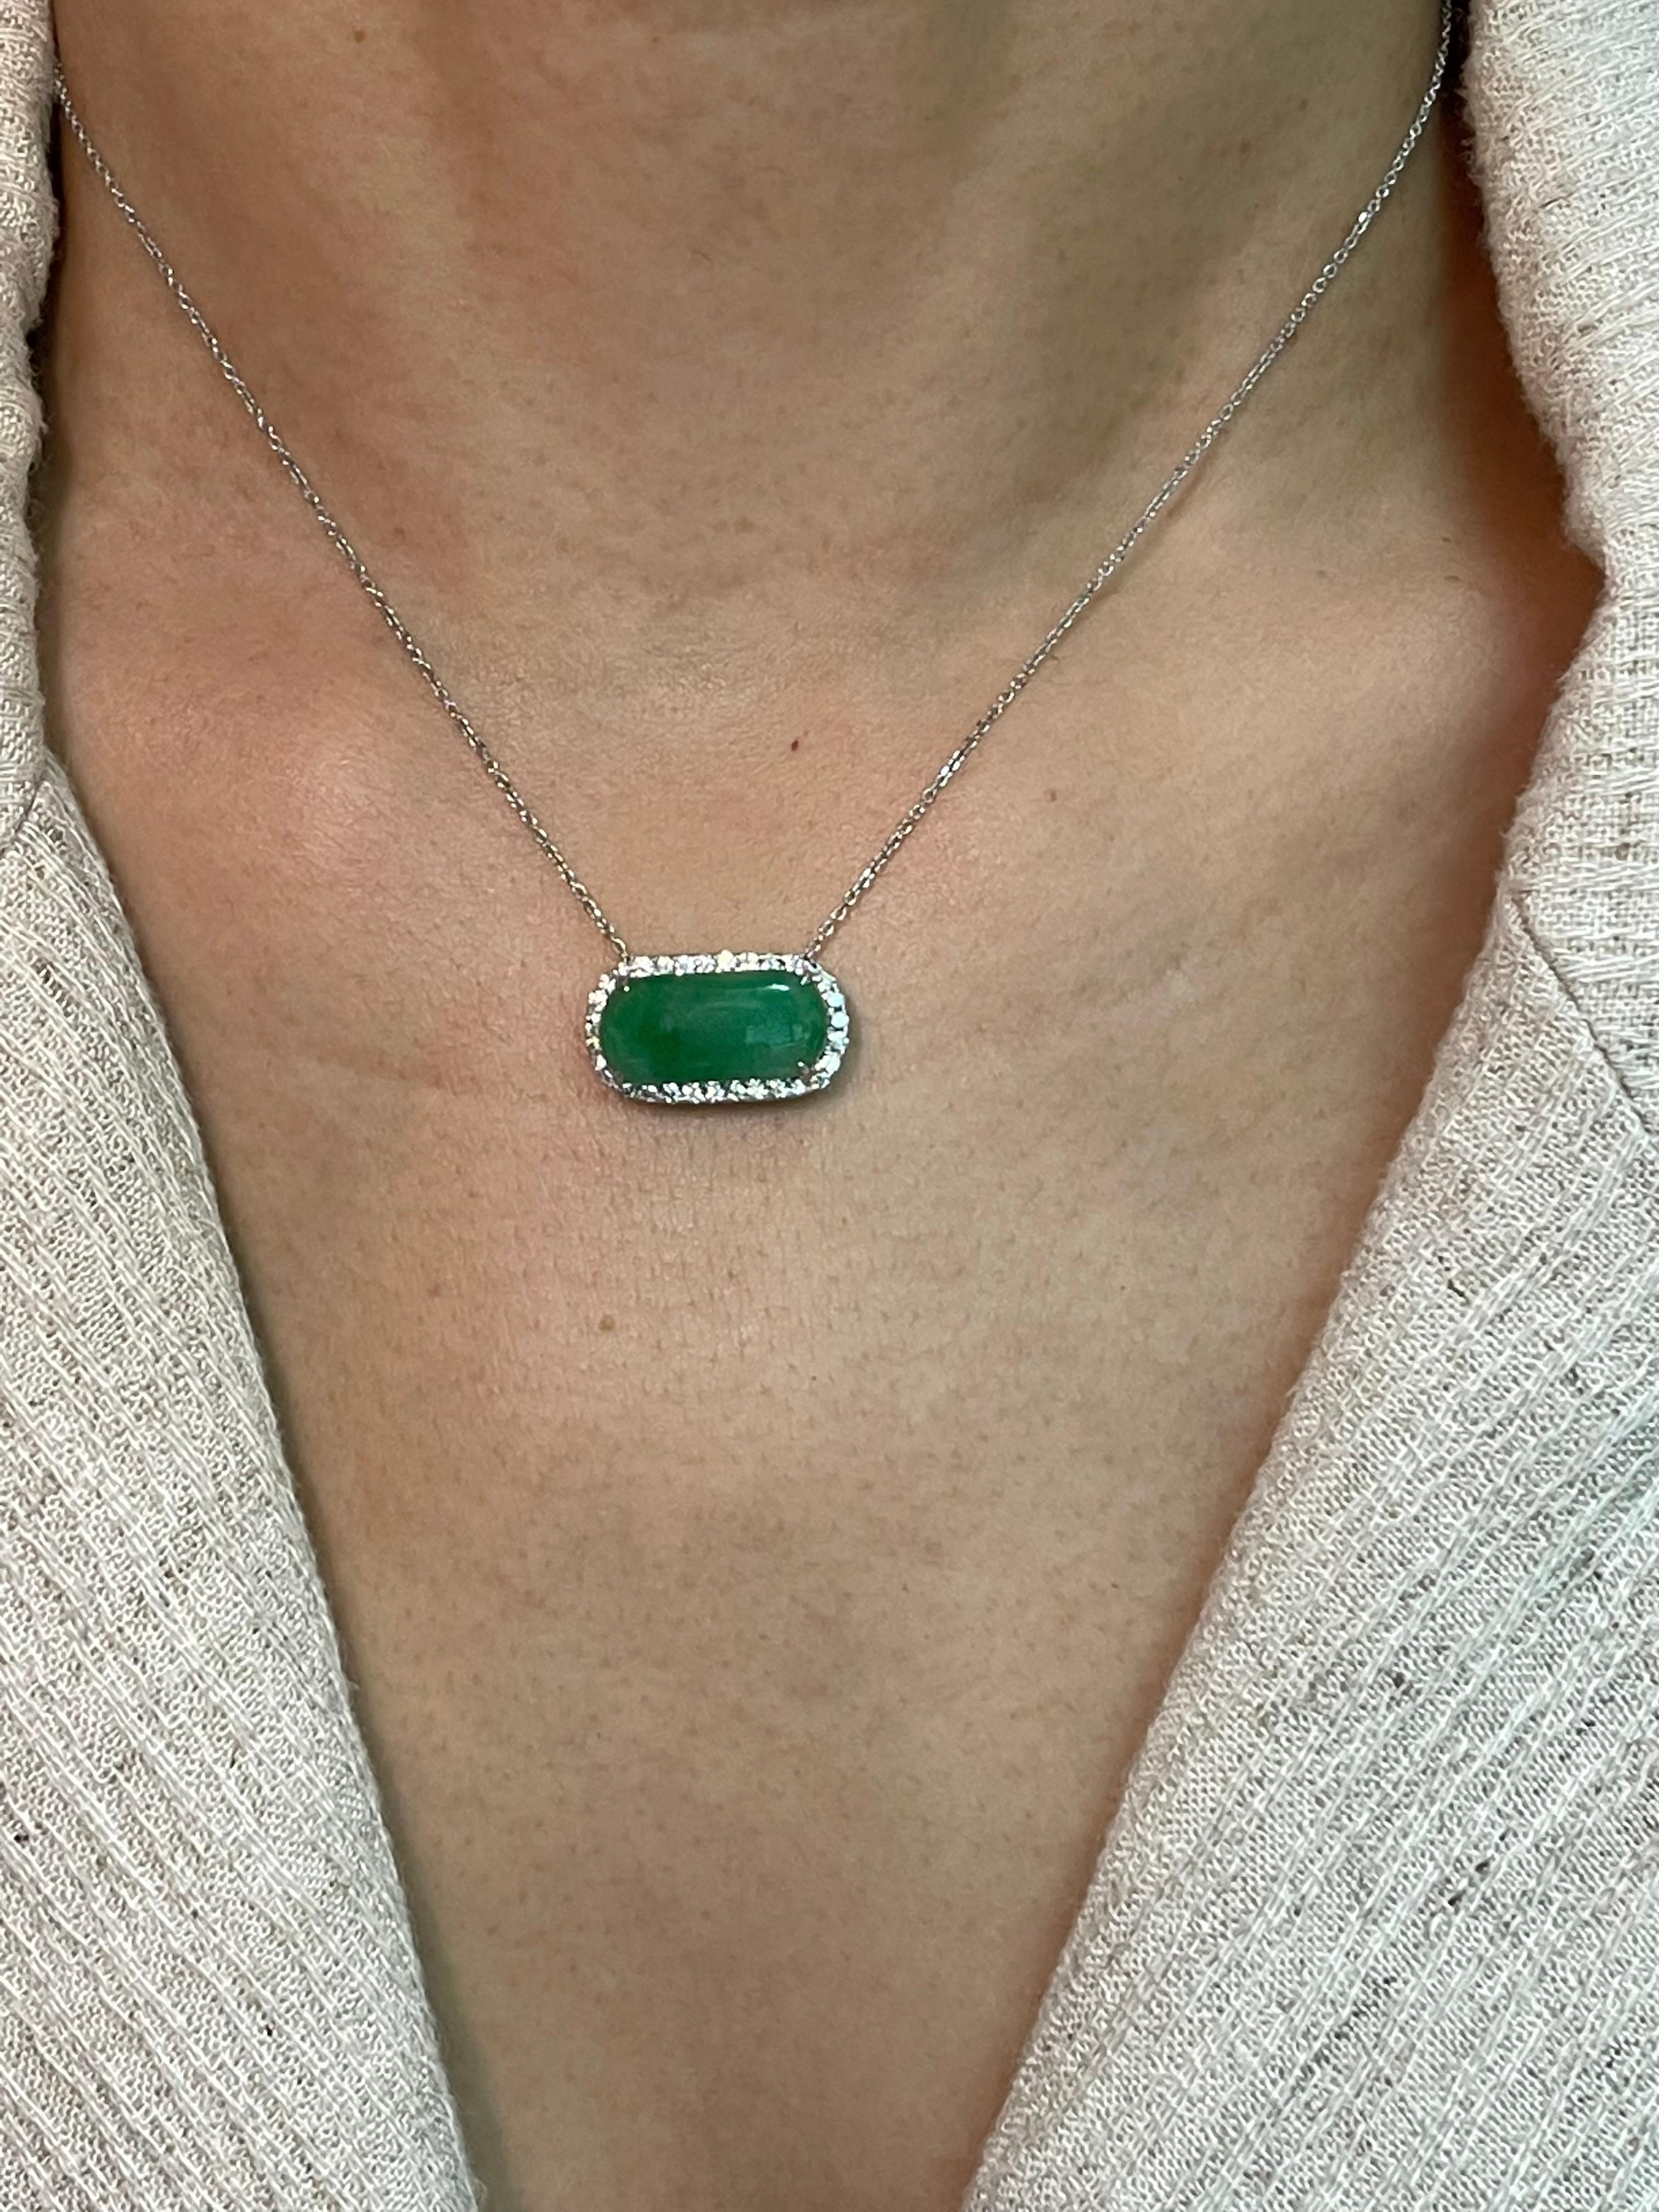 Certified Type A Jadeite Jade Diamond Pendant Drop Necklace, Apple Green Color For Sale 4